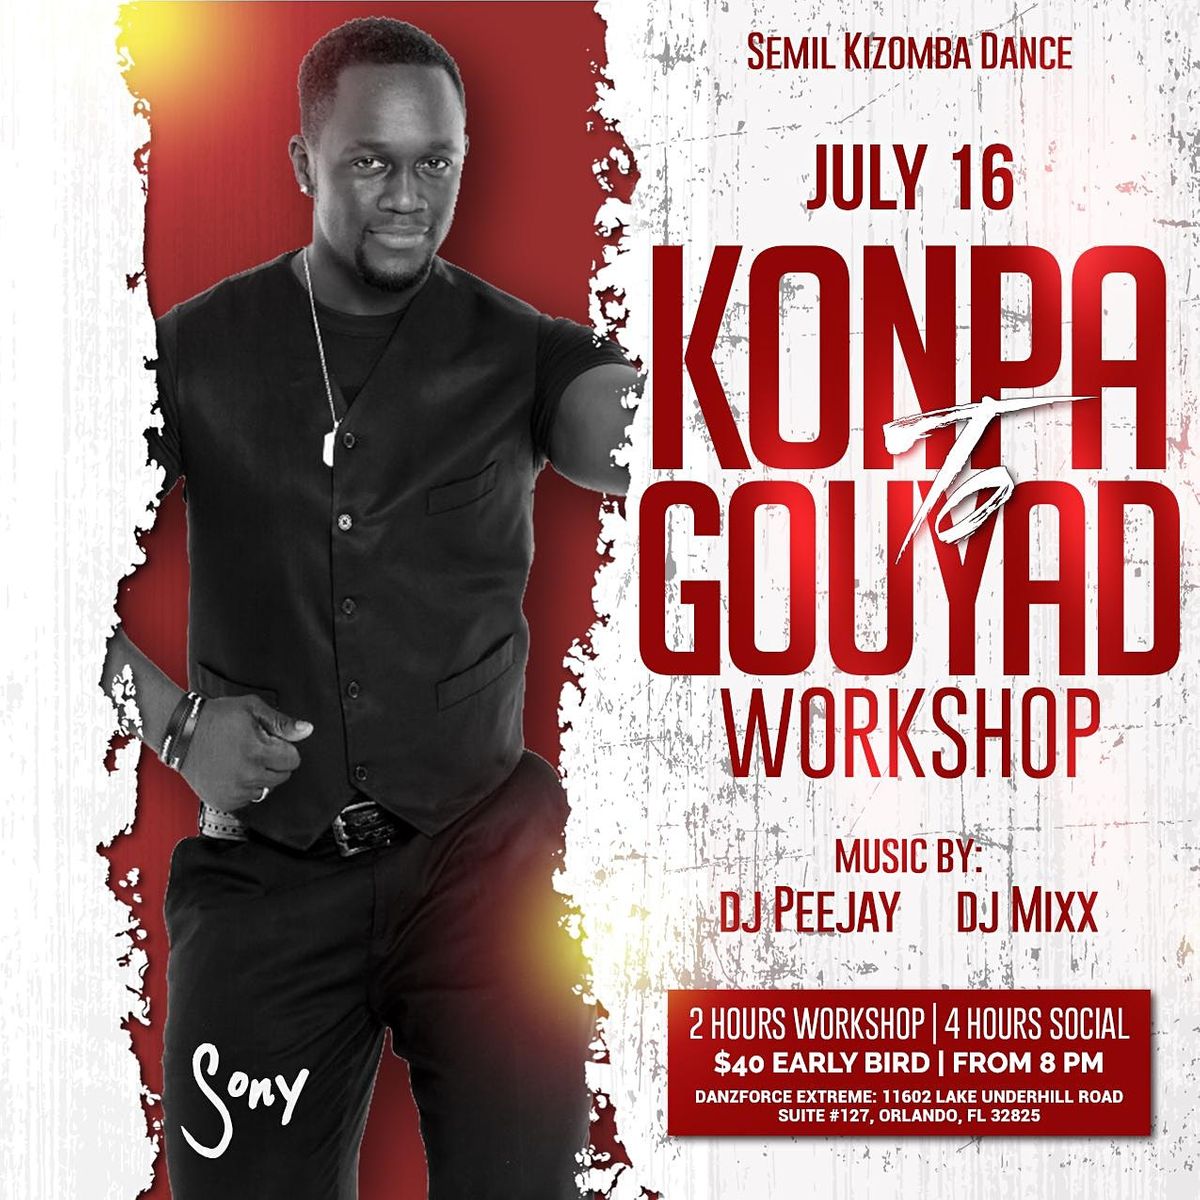 Konpa to Gouyad Workshop with Sony (WKOTR)